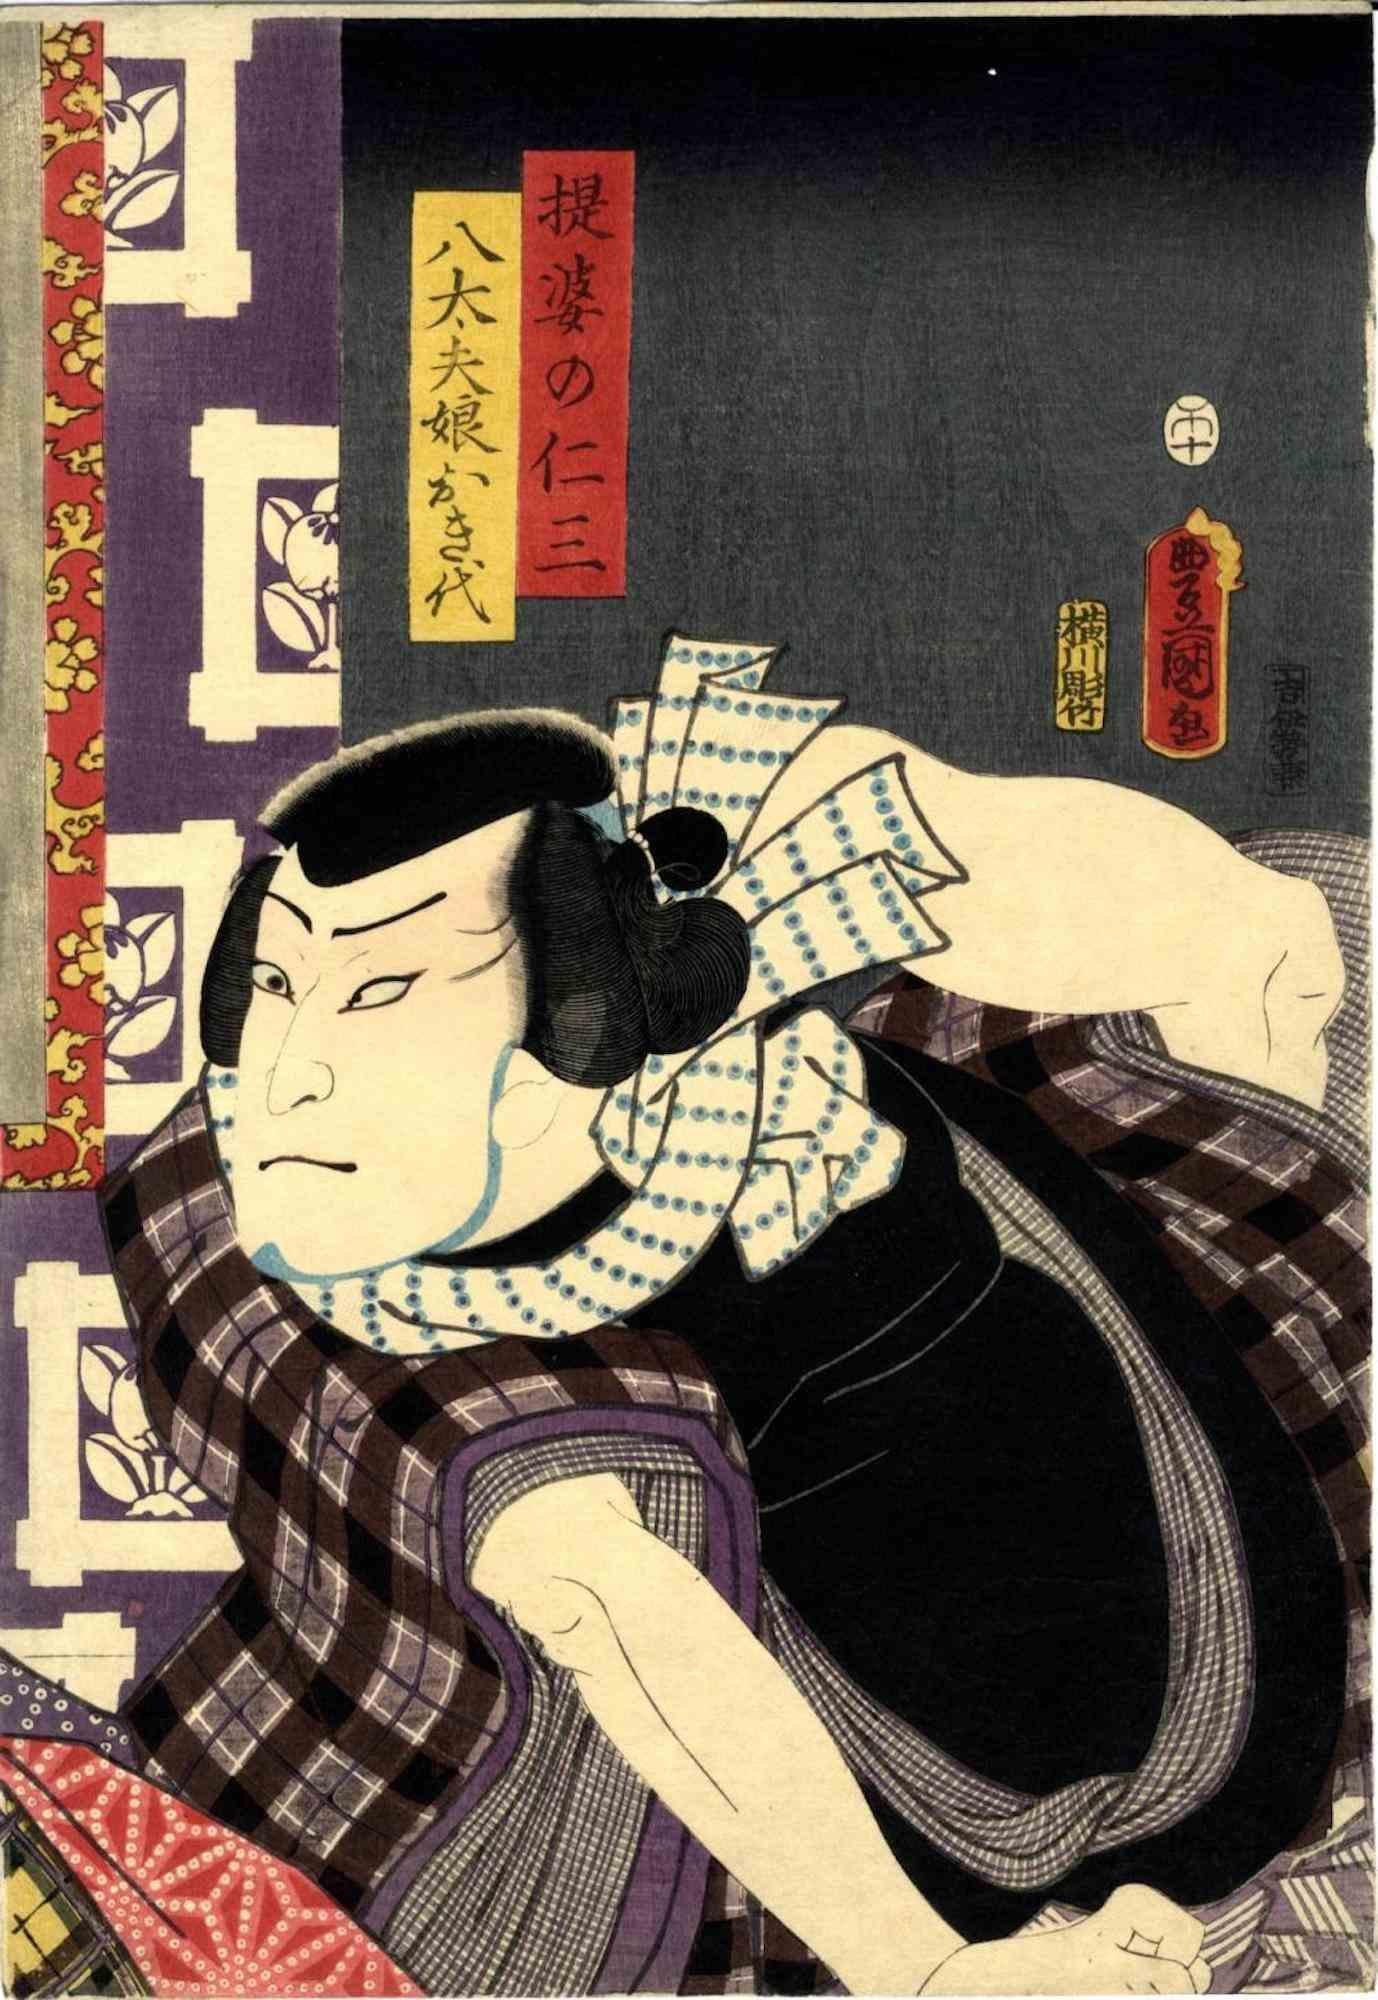 Utagawa Kunisada (Toyokuni III) Figurative Print - Portrait of Nakamura Fukus  - Woodcut Print by Utagawa Kunisada - 1850s